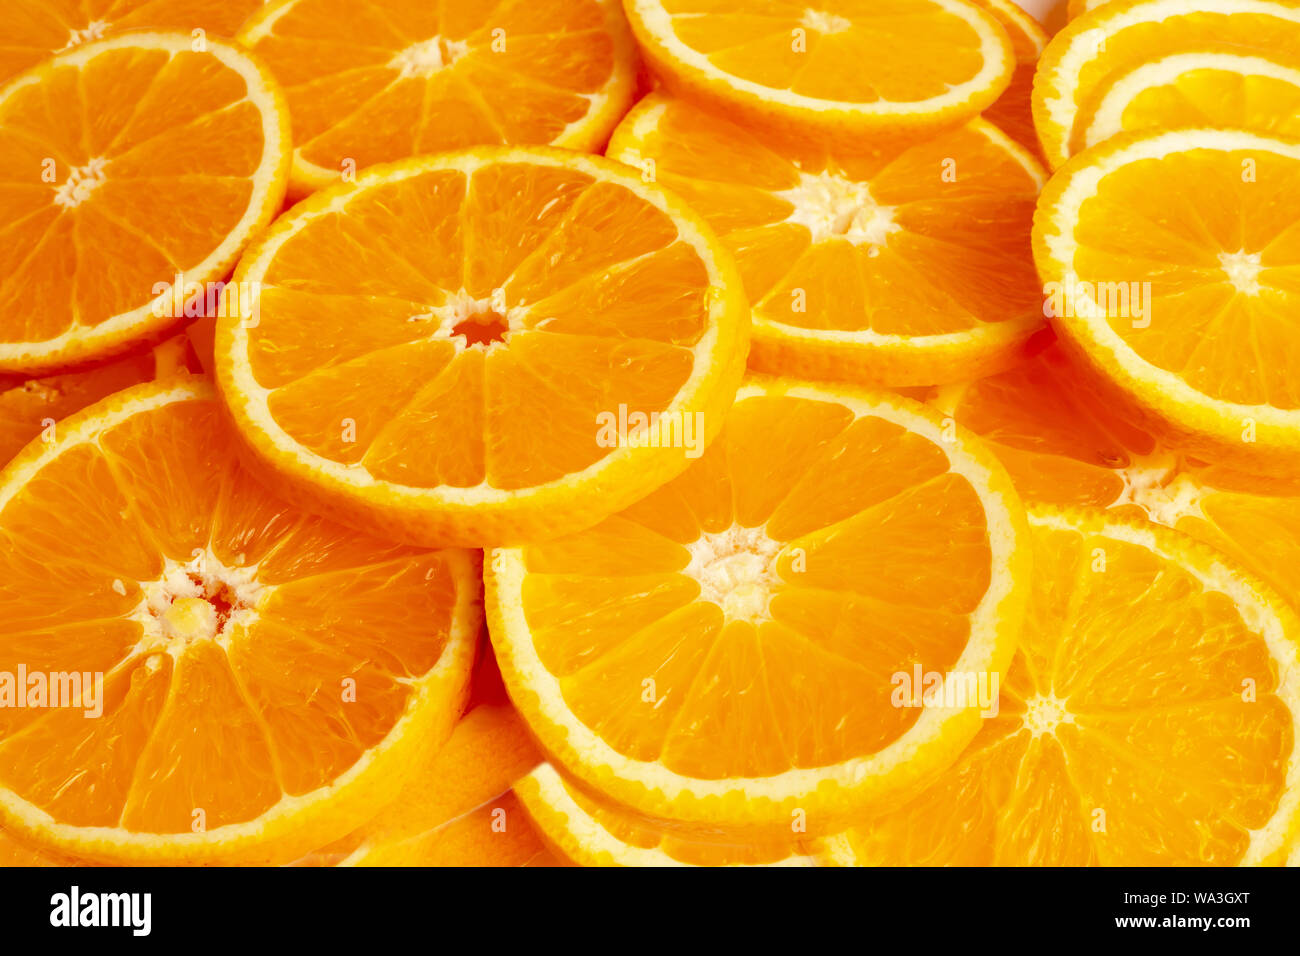 Cerrar fondos y texturados de frutas de naranja en la pieza. El resultado es agridulce o dulce. Contiene calcio, potasio, vitamina A y C. Foto de stock